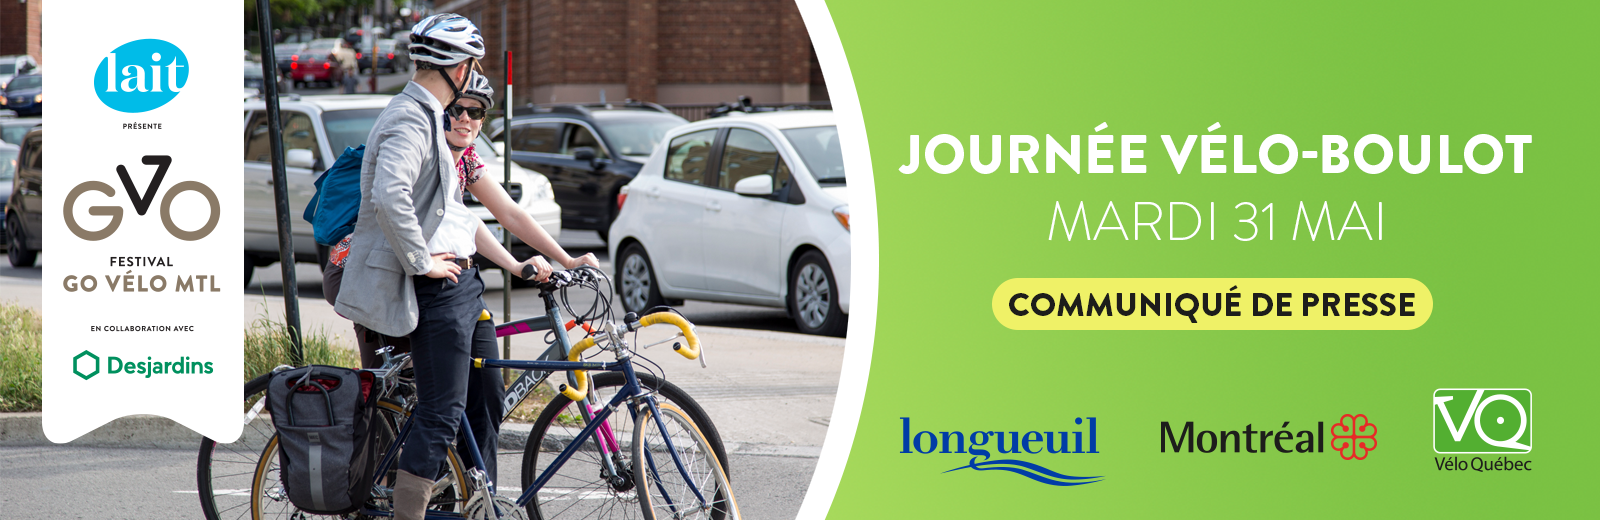 RAPPEL - Le Festival Go vélo Montréal vous donne rendez-vous aujourd’hui à la Journée vélo-boulot!